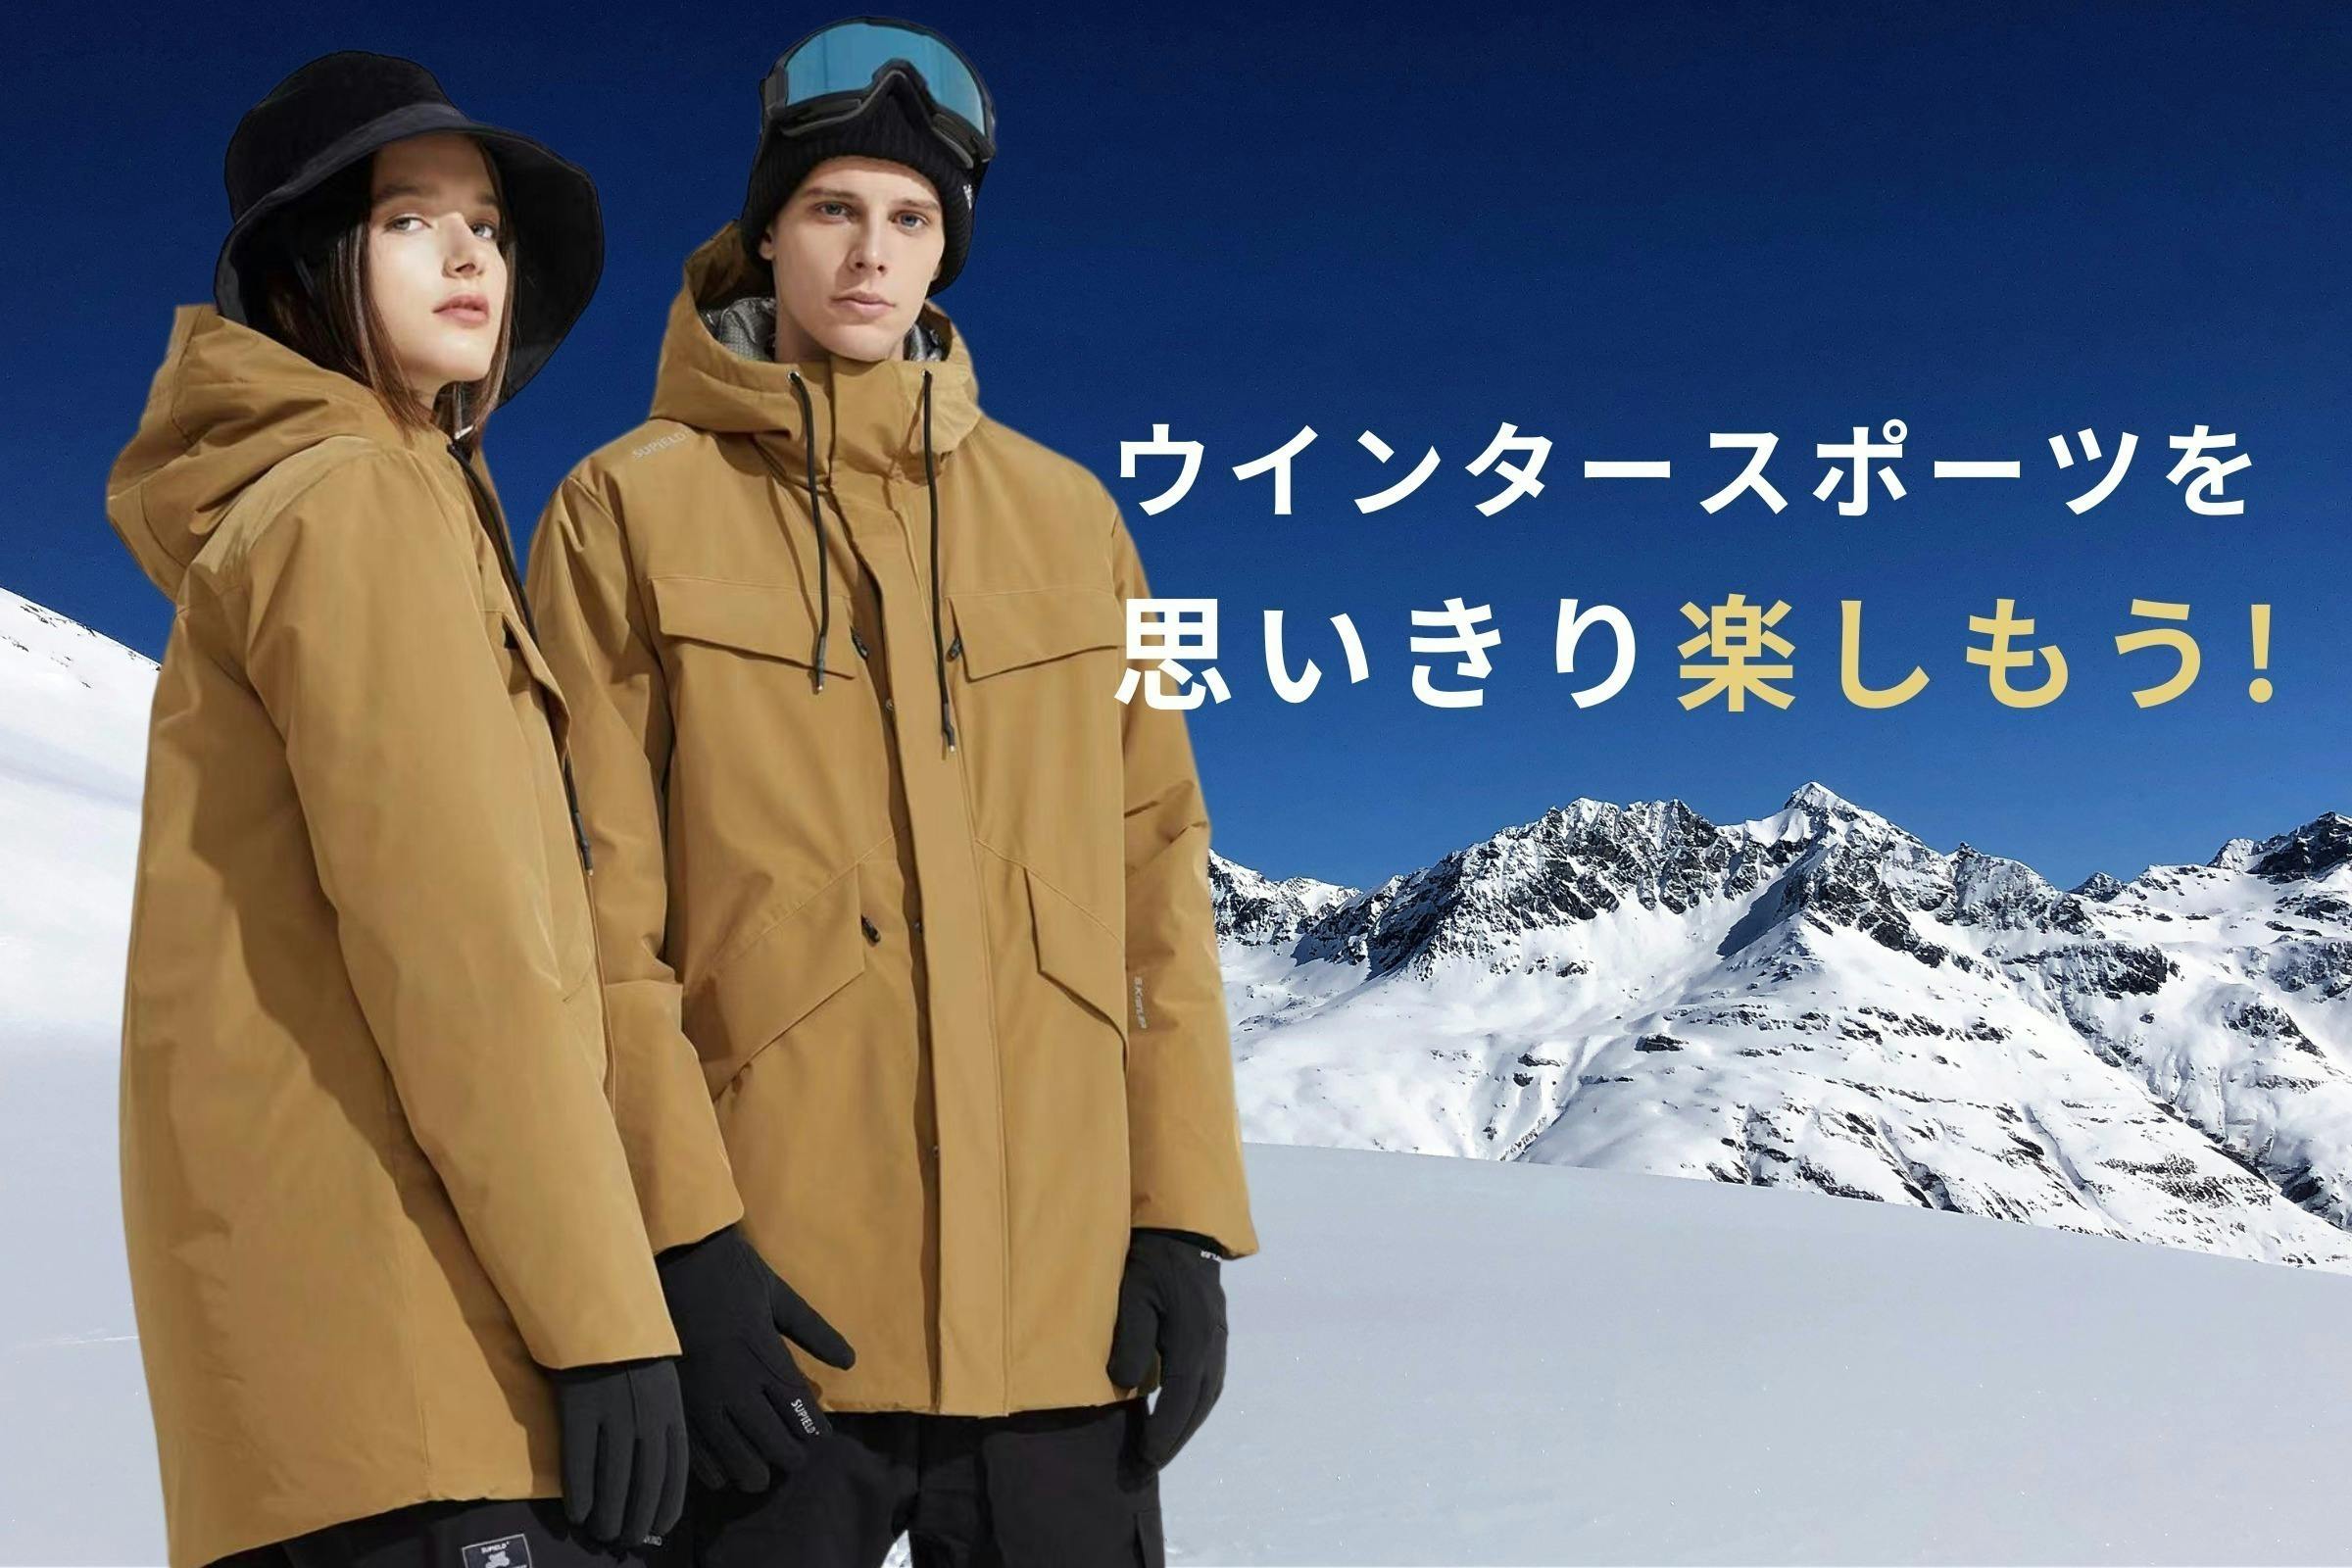 更に進化！宇宙服素材採用「高機能防寒ジャケット」【防寒性・機能性・着心地】が抜群